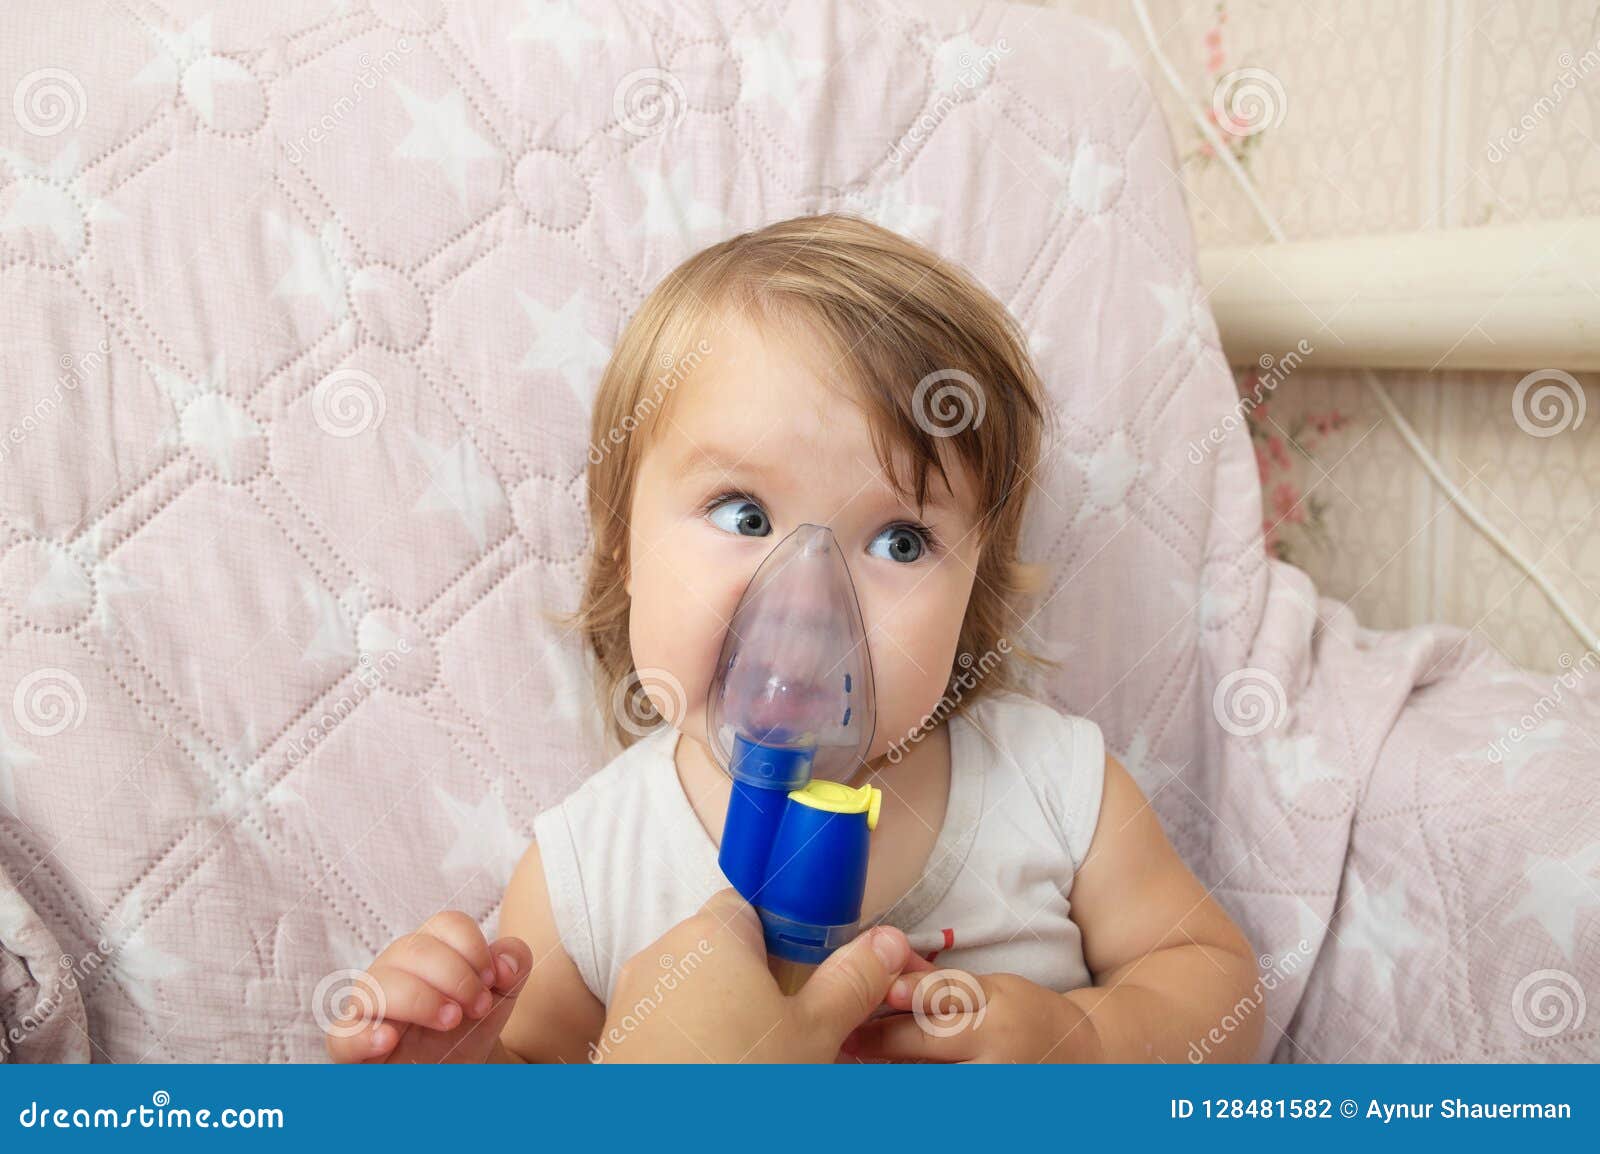 https://thumbs.dreamstime.com/z/masque-en-difficult%C3%A9-de-n%C3%A9buliseur-d-utilisation-b%C3%A9b%C3%A9-pour-l-inhalation-proc%C3%A9dure-respiratoire-par-la-pneumonie-ou-toux-128481582.jpg